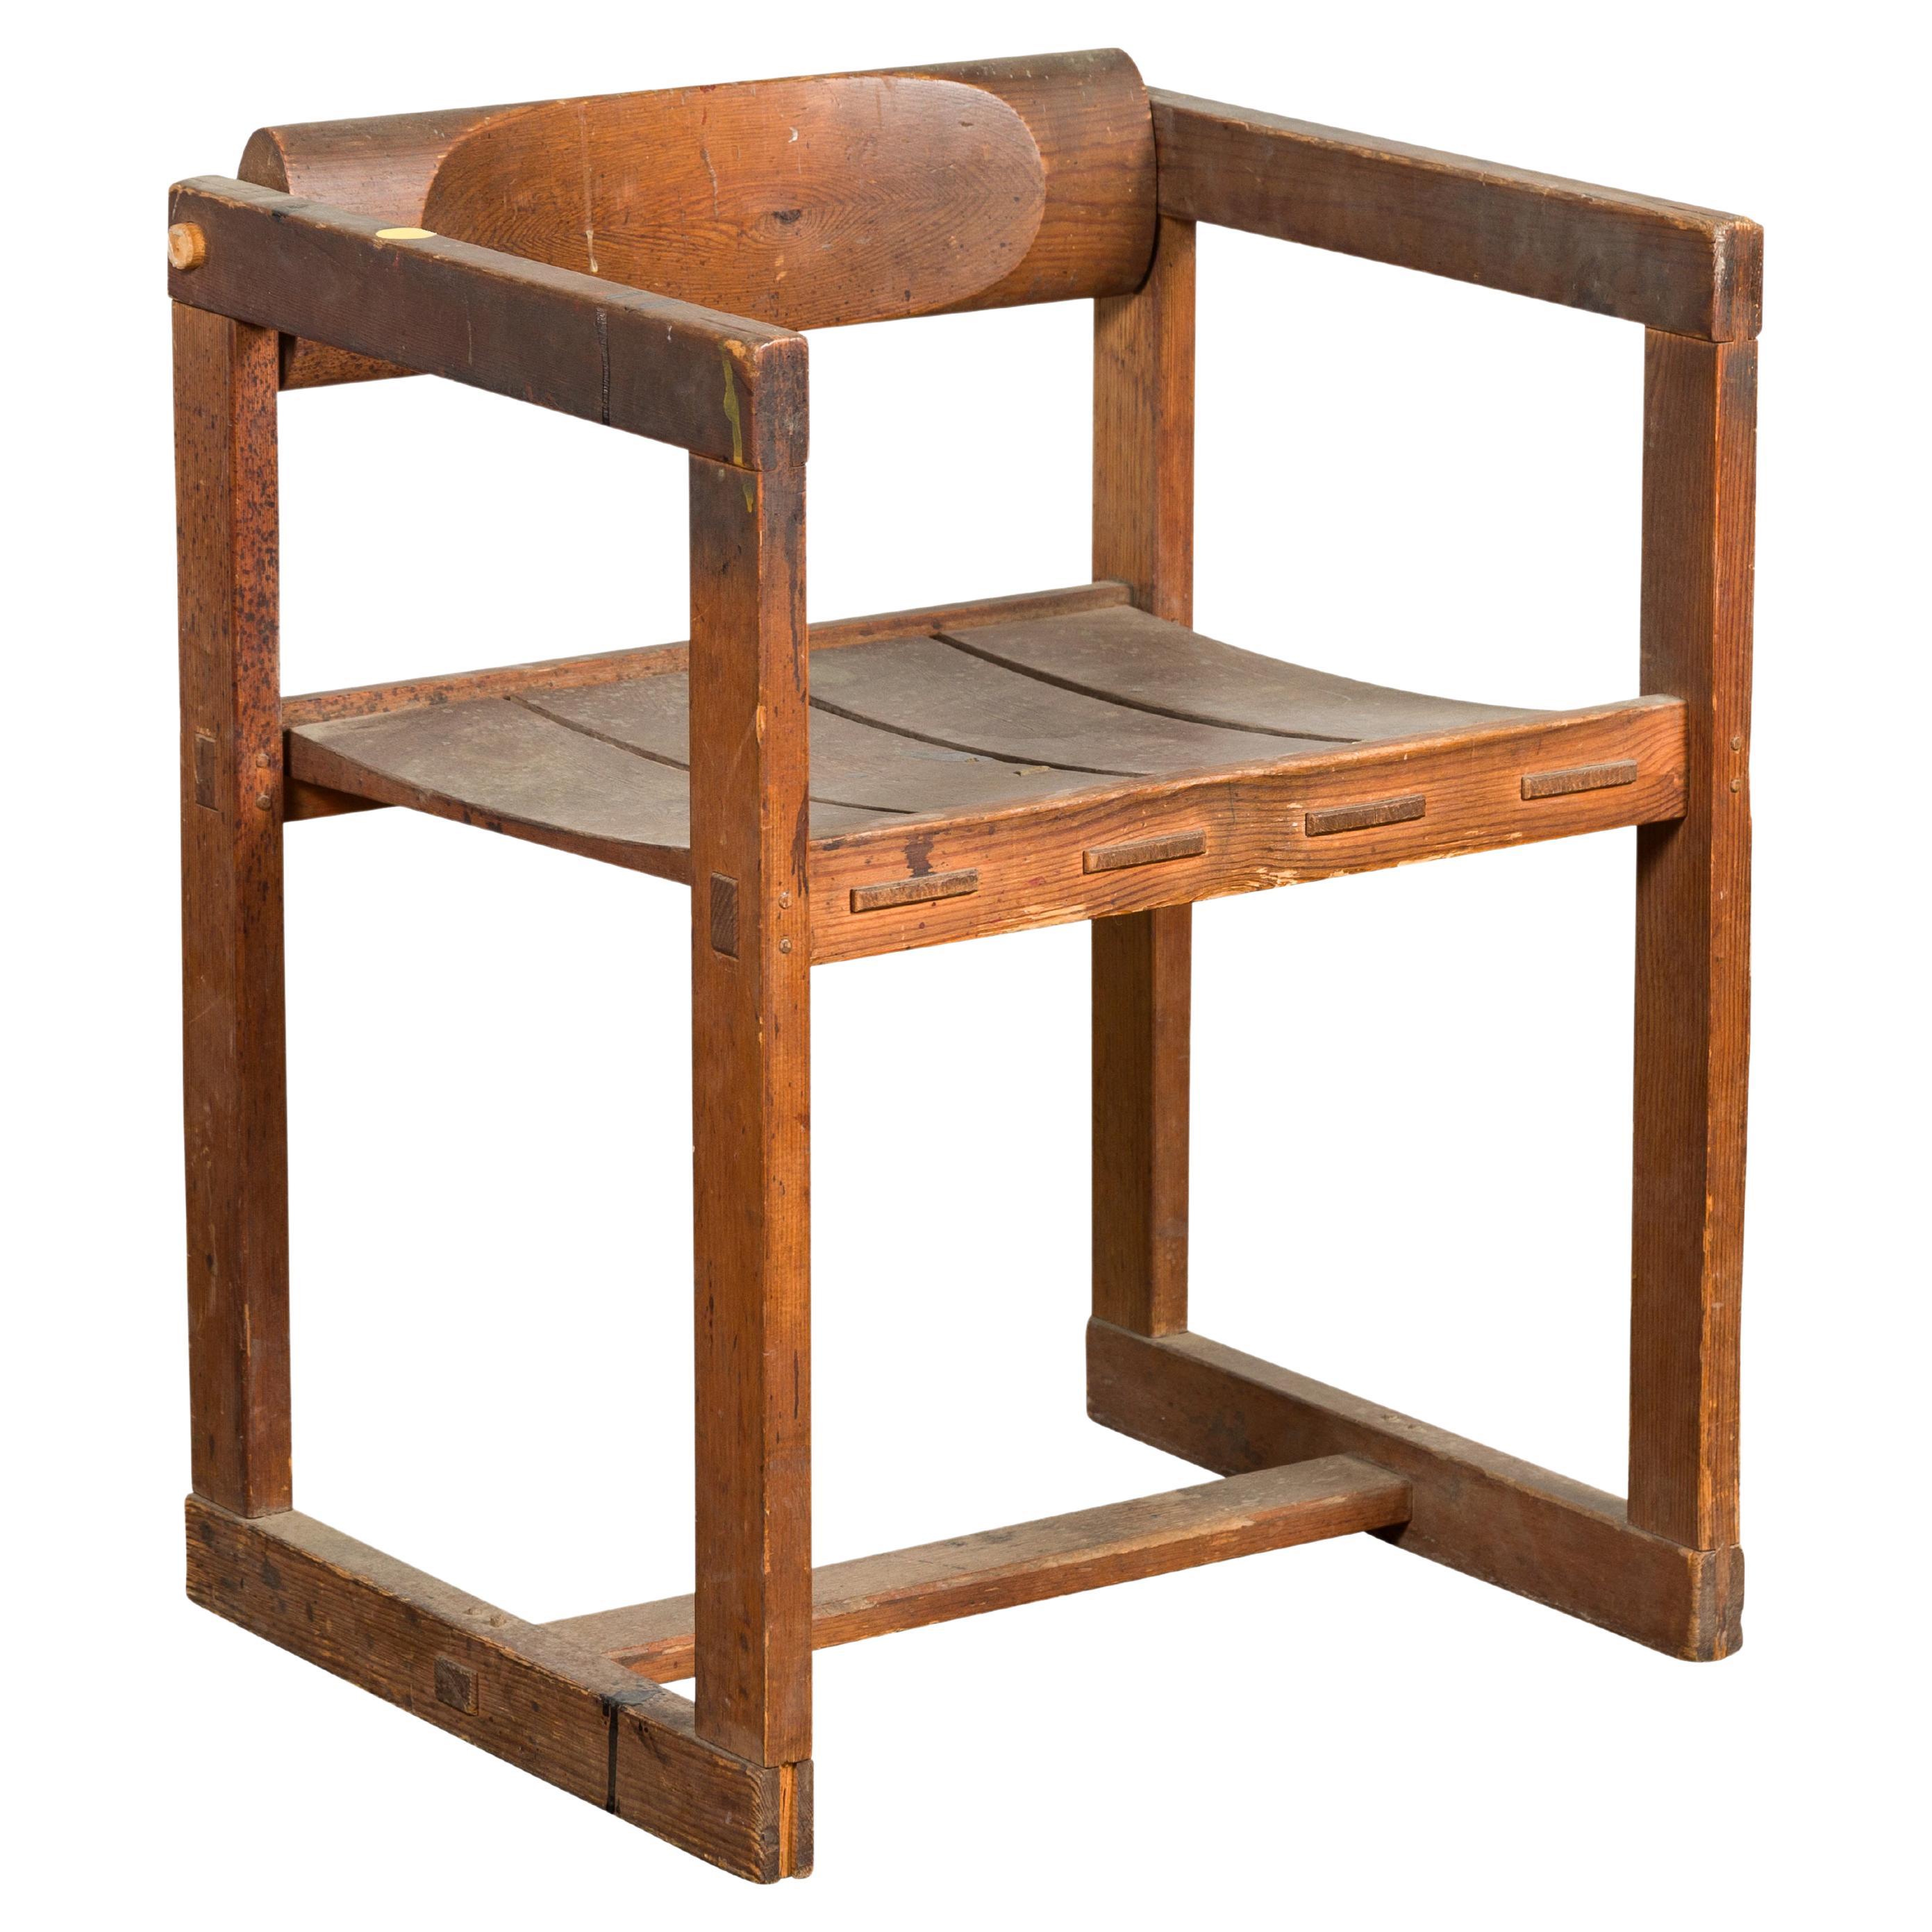 Chaise de bureau vintage de style industriel avec caractère rustique par un artiste